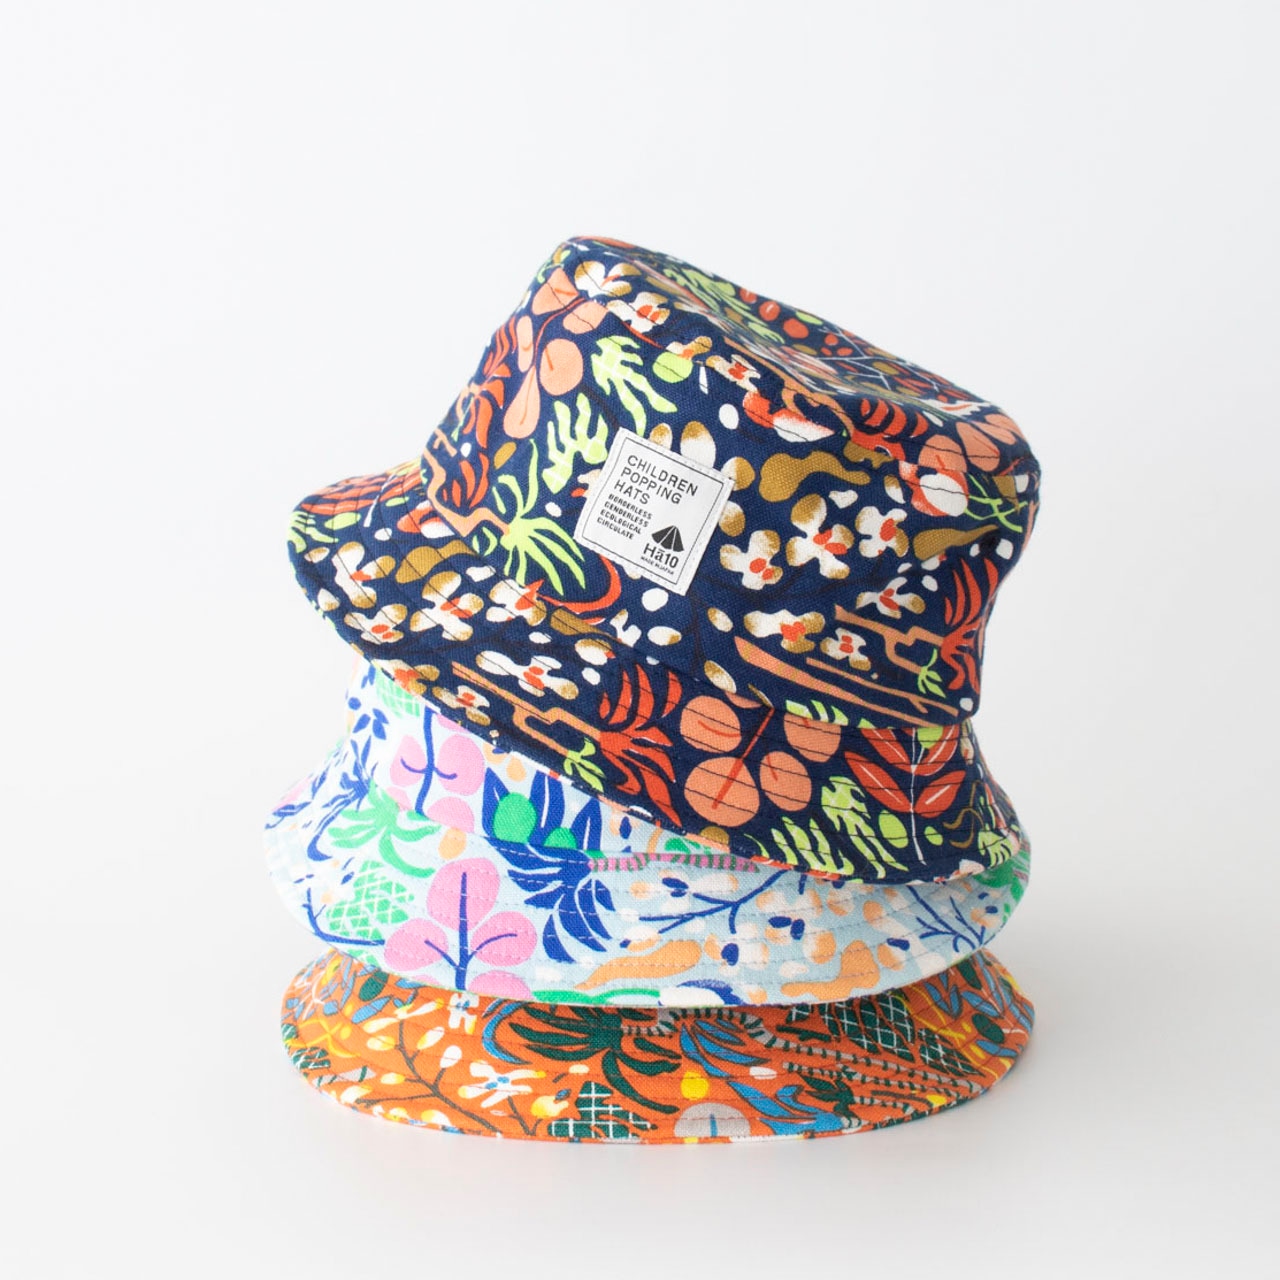 バケットハット【ネイビー】54cm ブランド 子供帽子  ベビー帽子 キッズハット キッズキャップ 紫外線対策 日本製 出産祝い